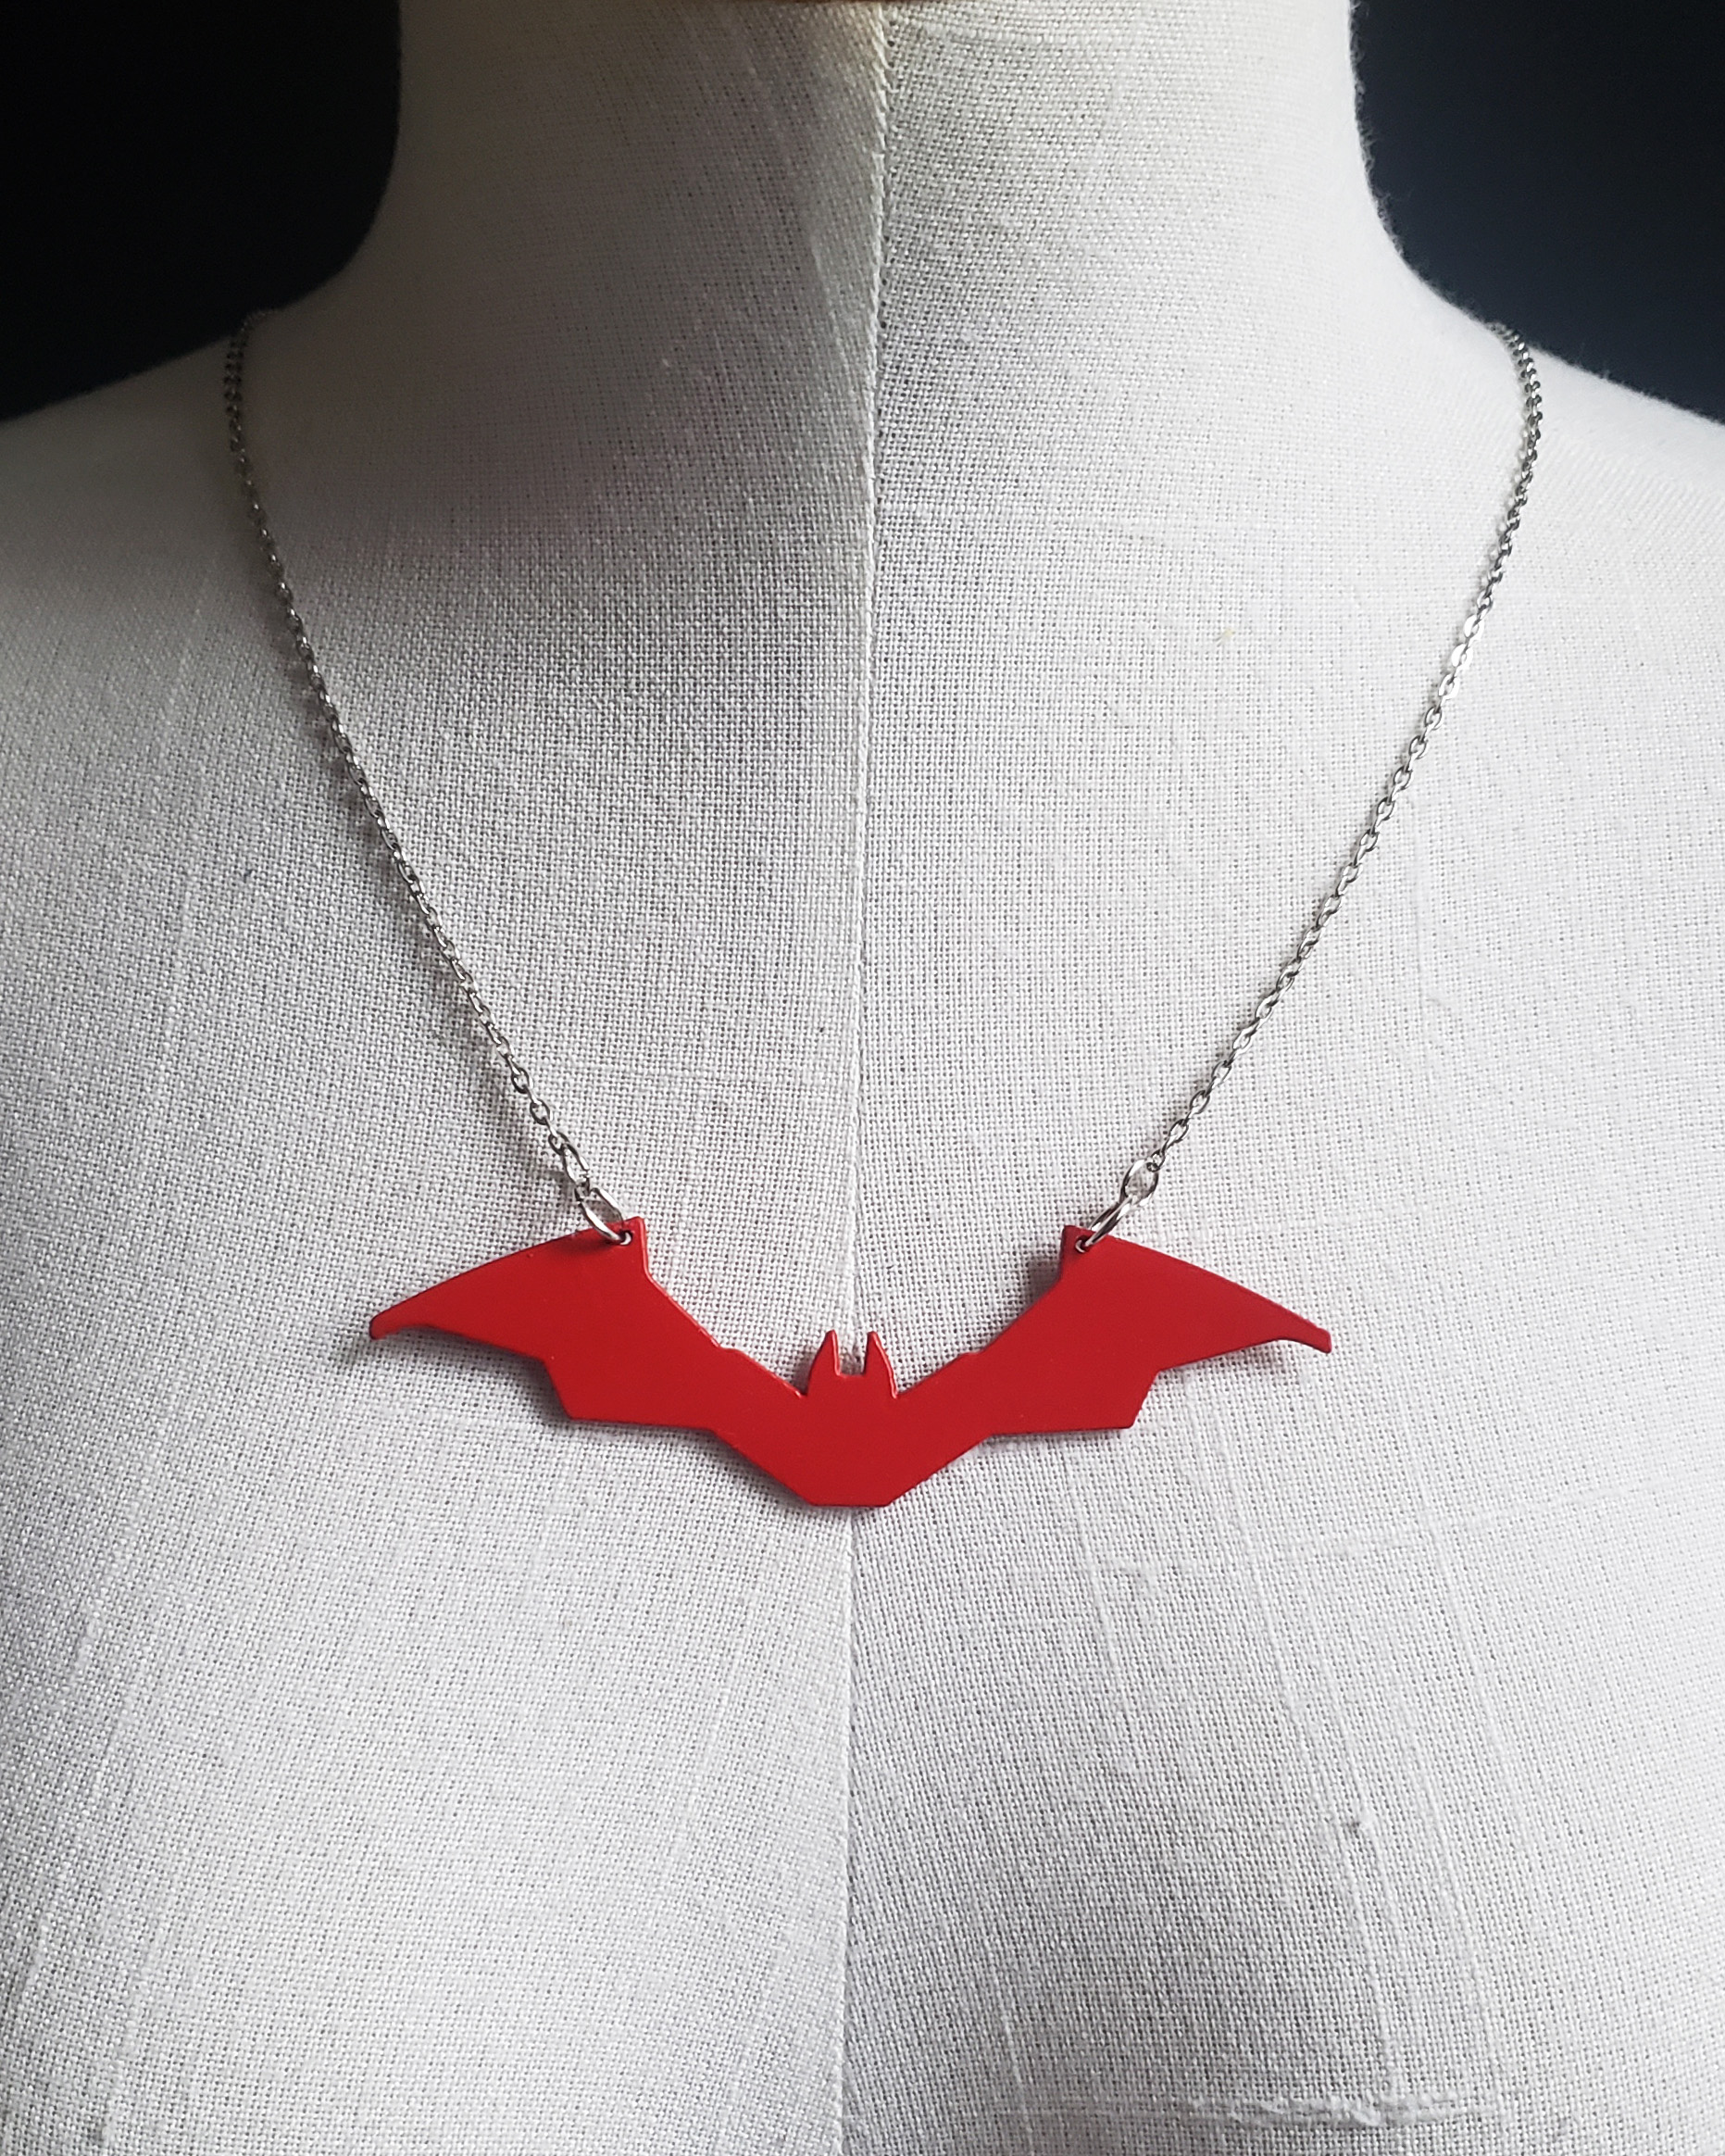 The Batman Necklace